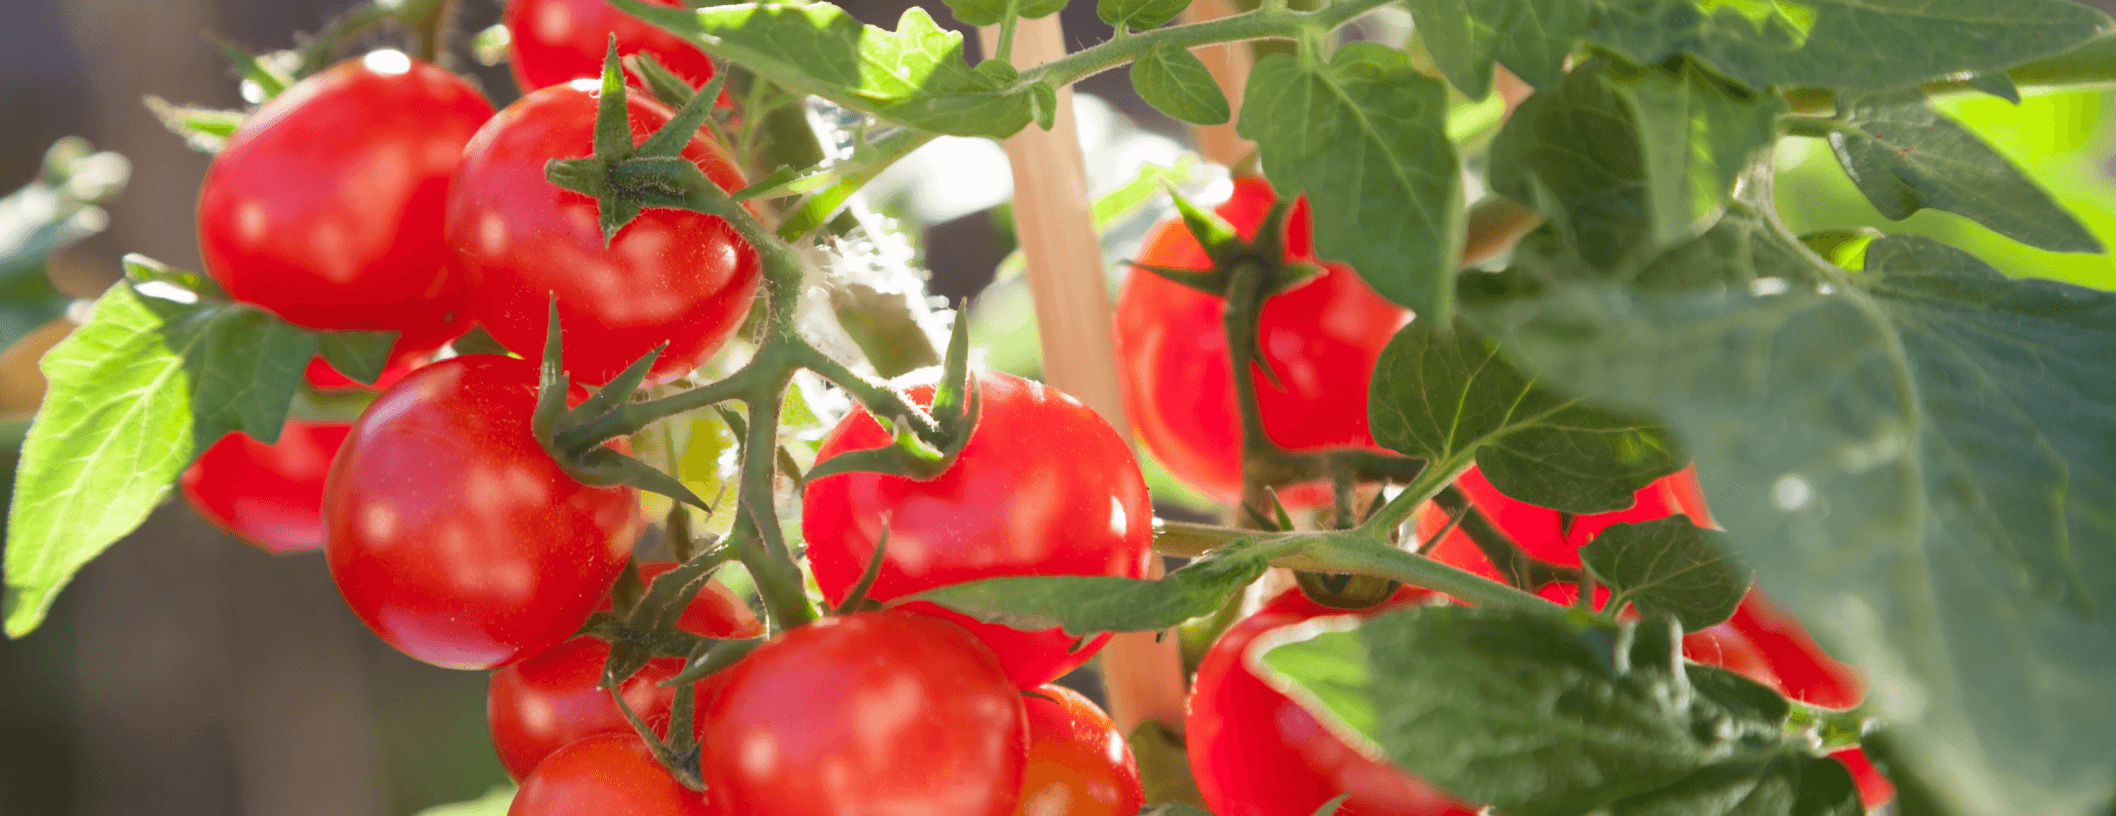 こだわりの水気耕栽培「冠熟®トマト」の寄贈